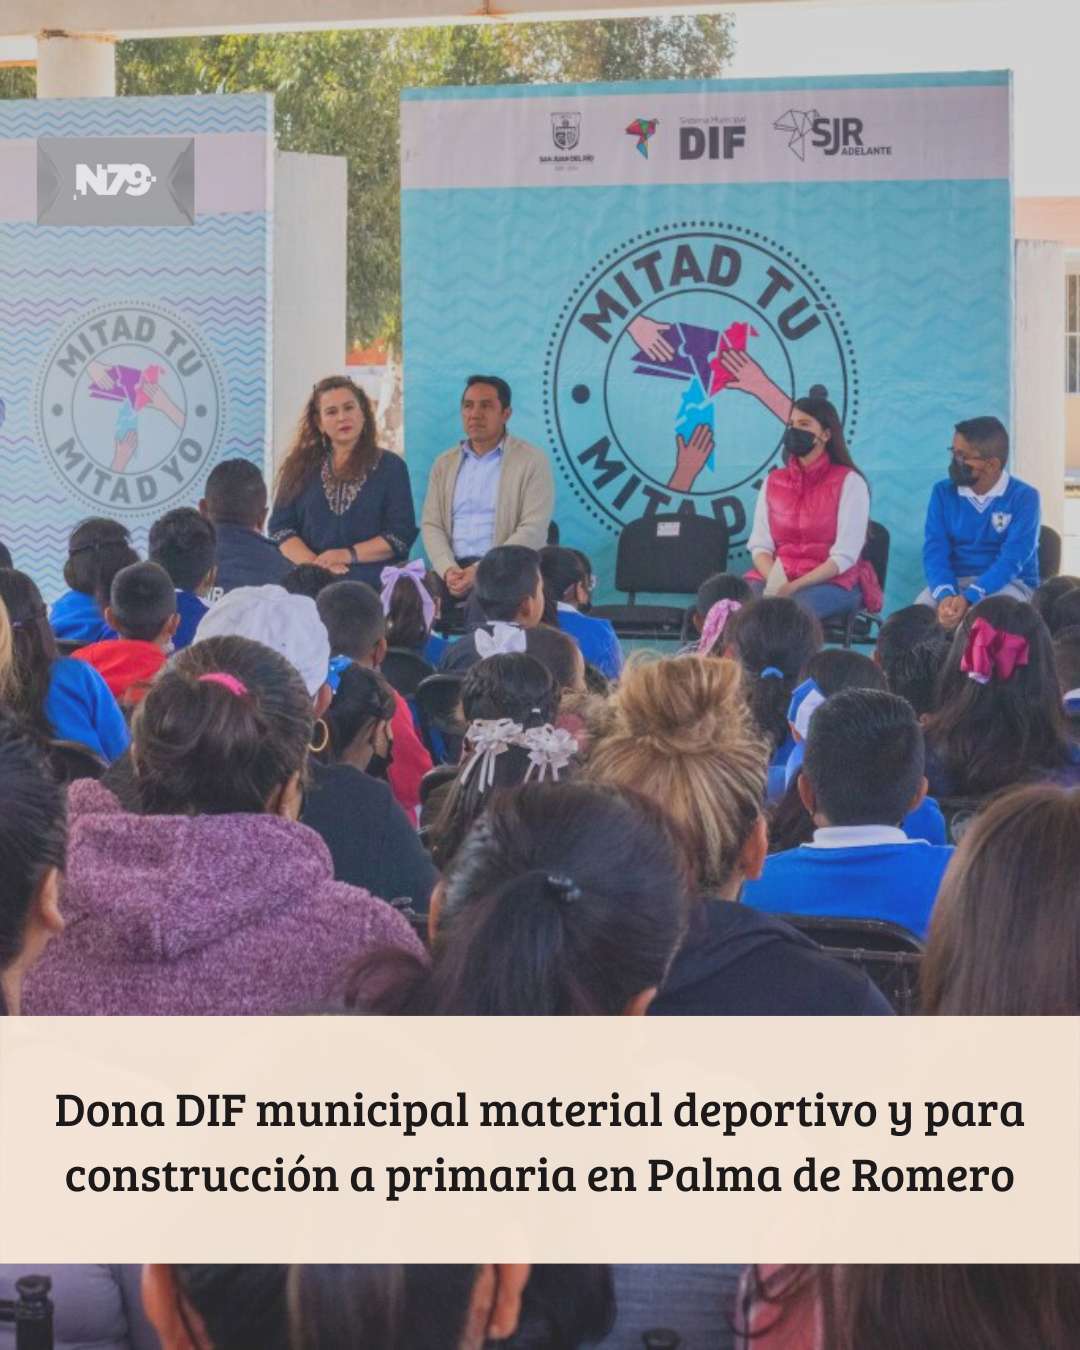 Dona DIF municipal material deportivo y para construcción a primaria en Palma de Romero